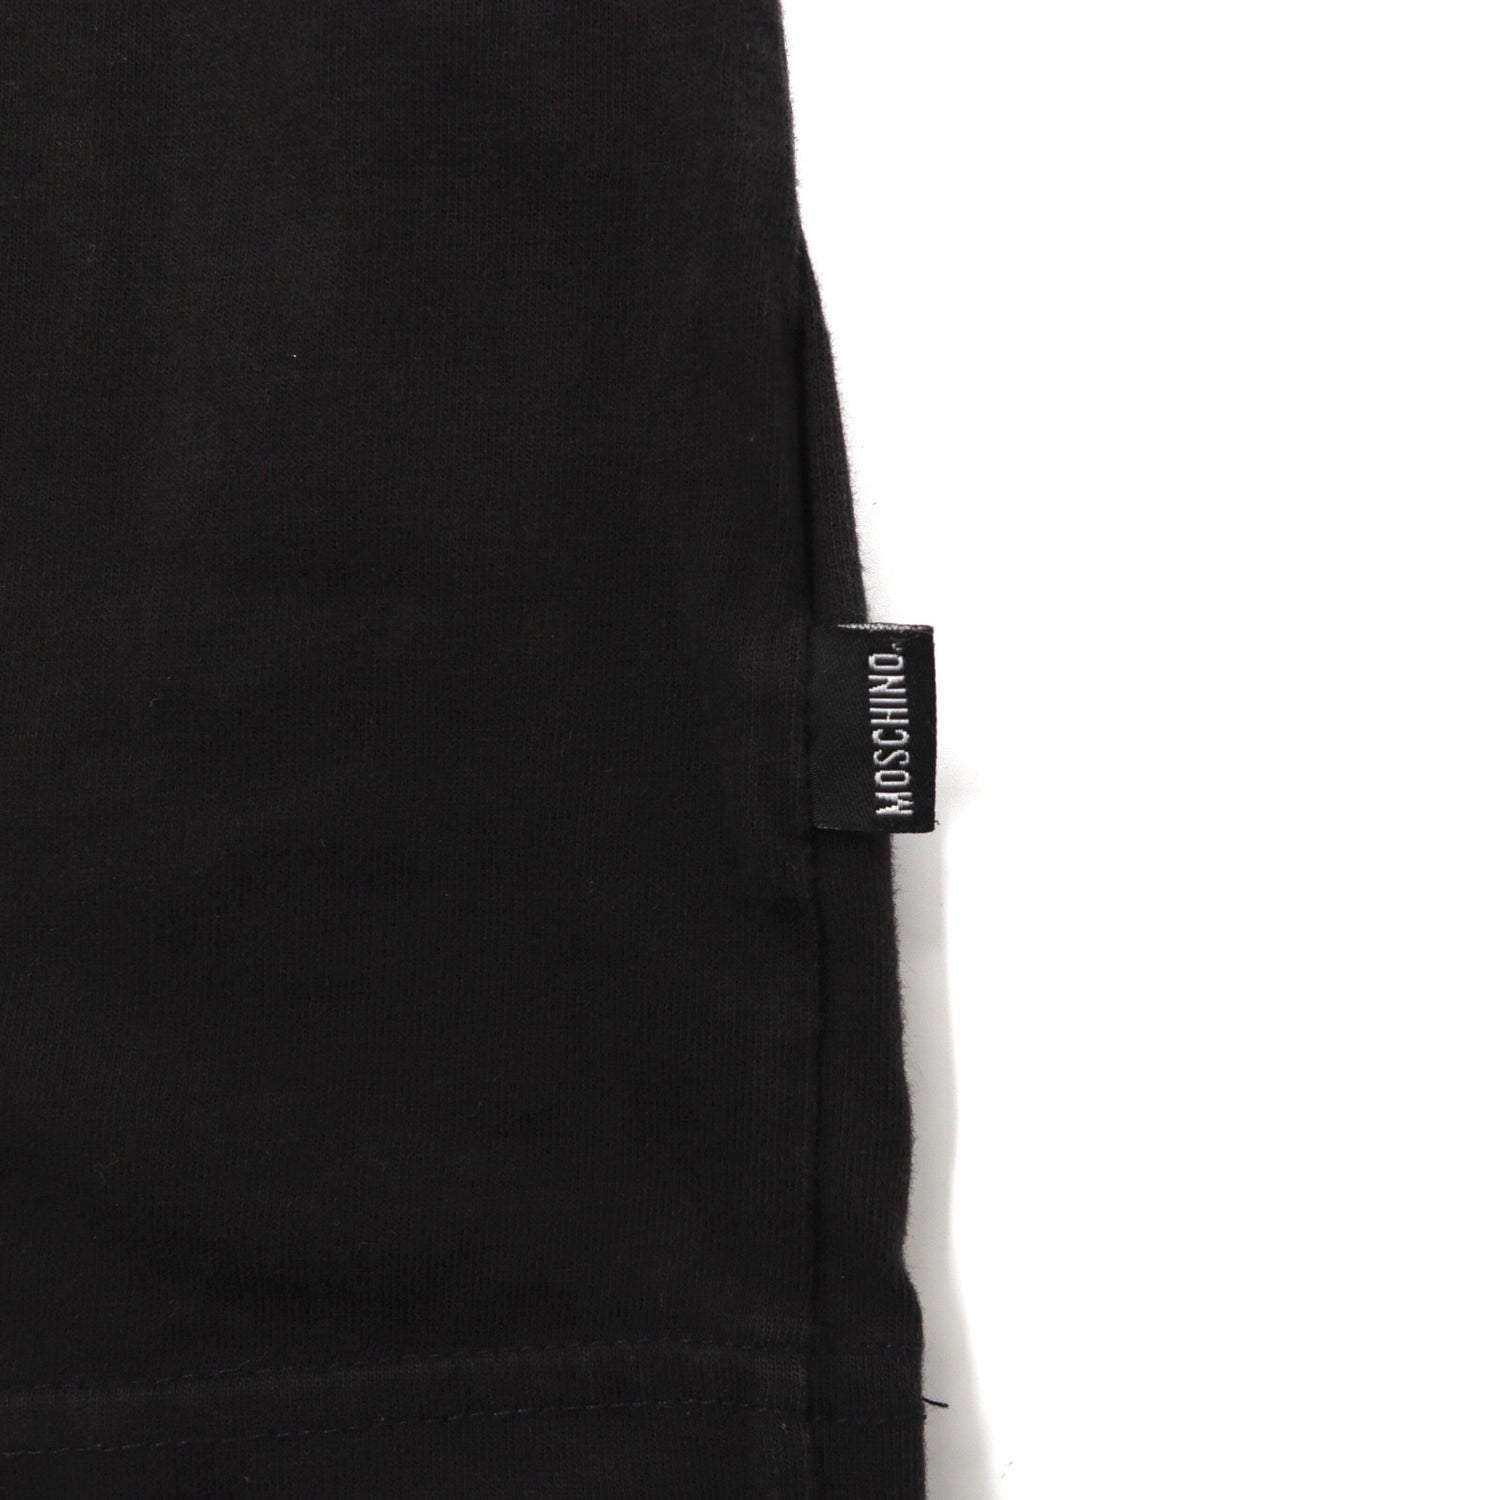 Moschino Jeans Long Sleeve T -shirt XL Black Big Fish Print 90s